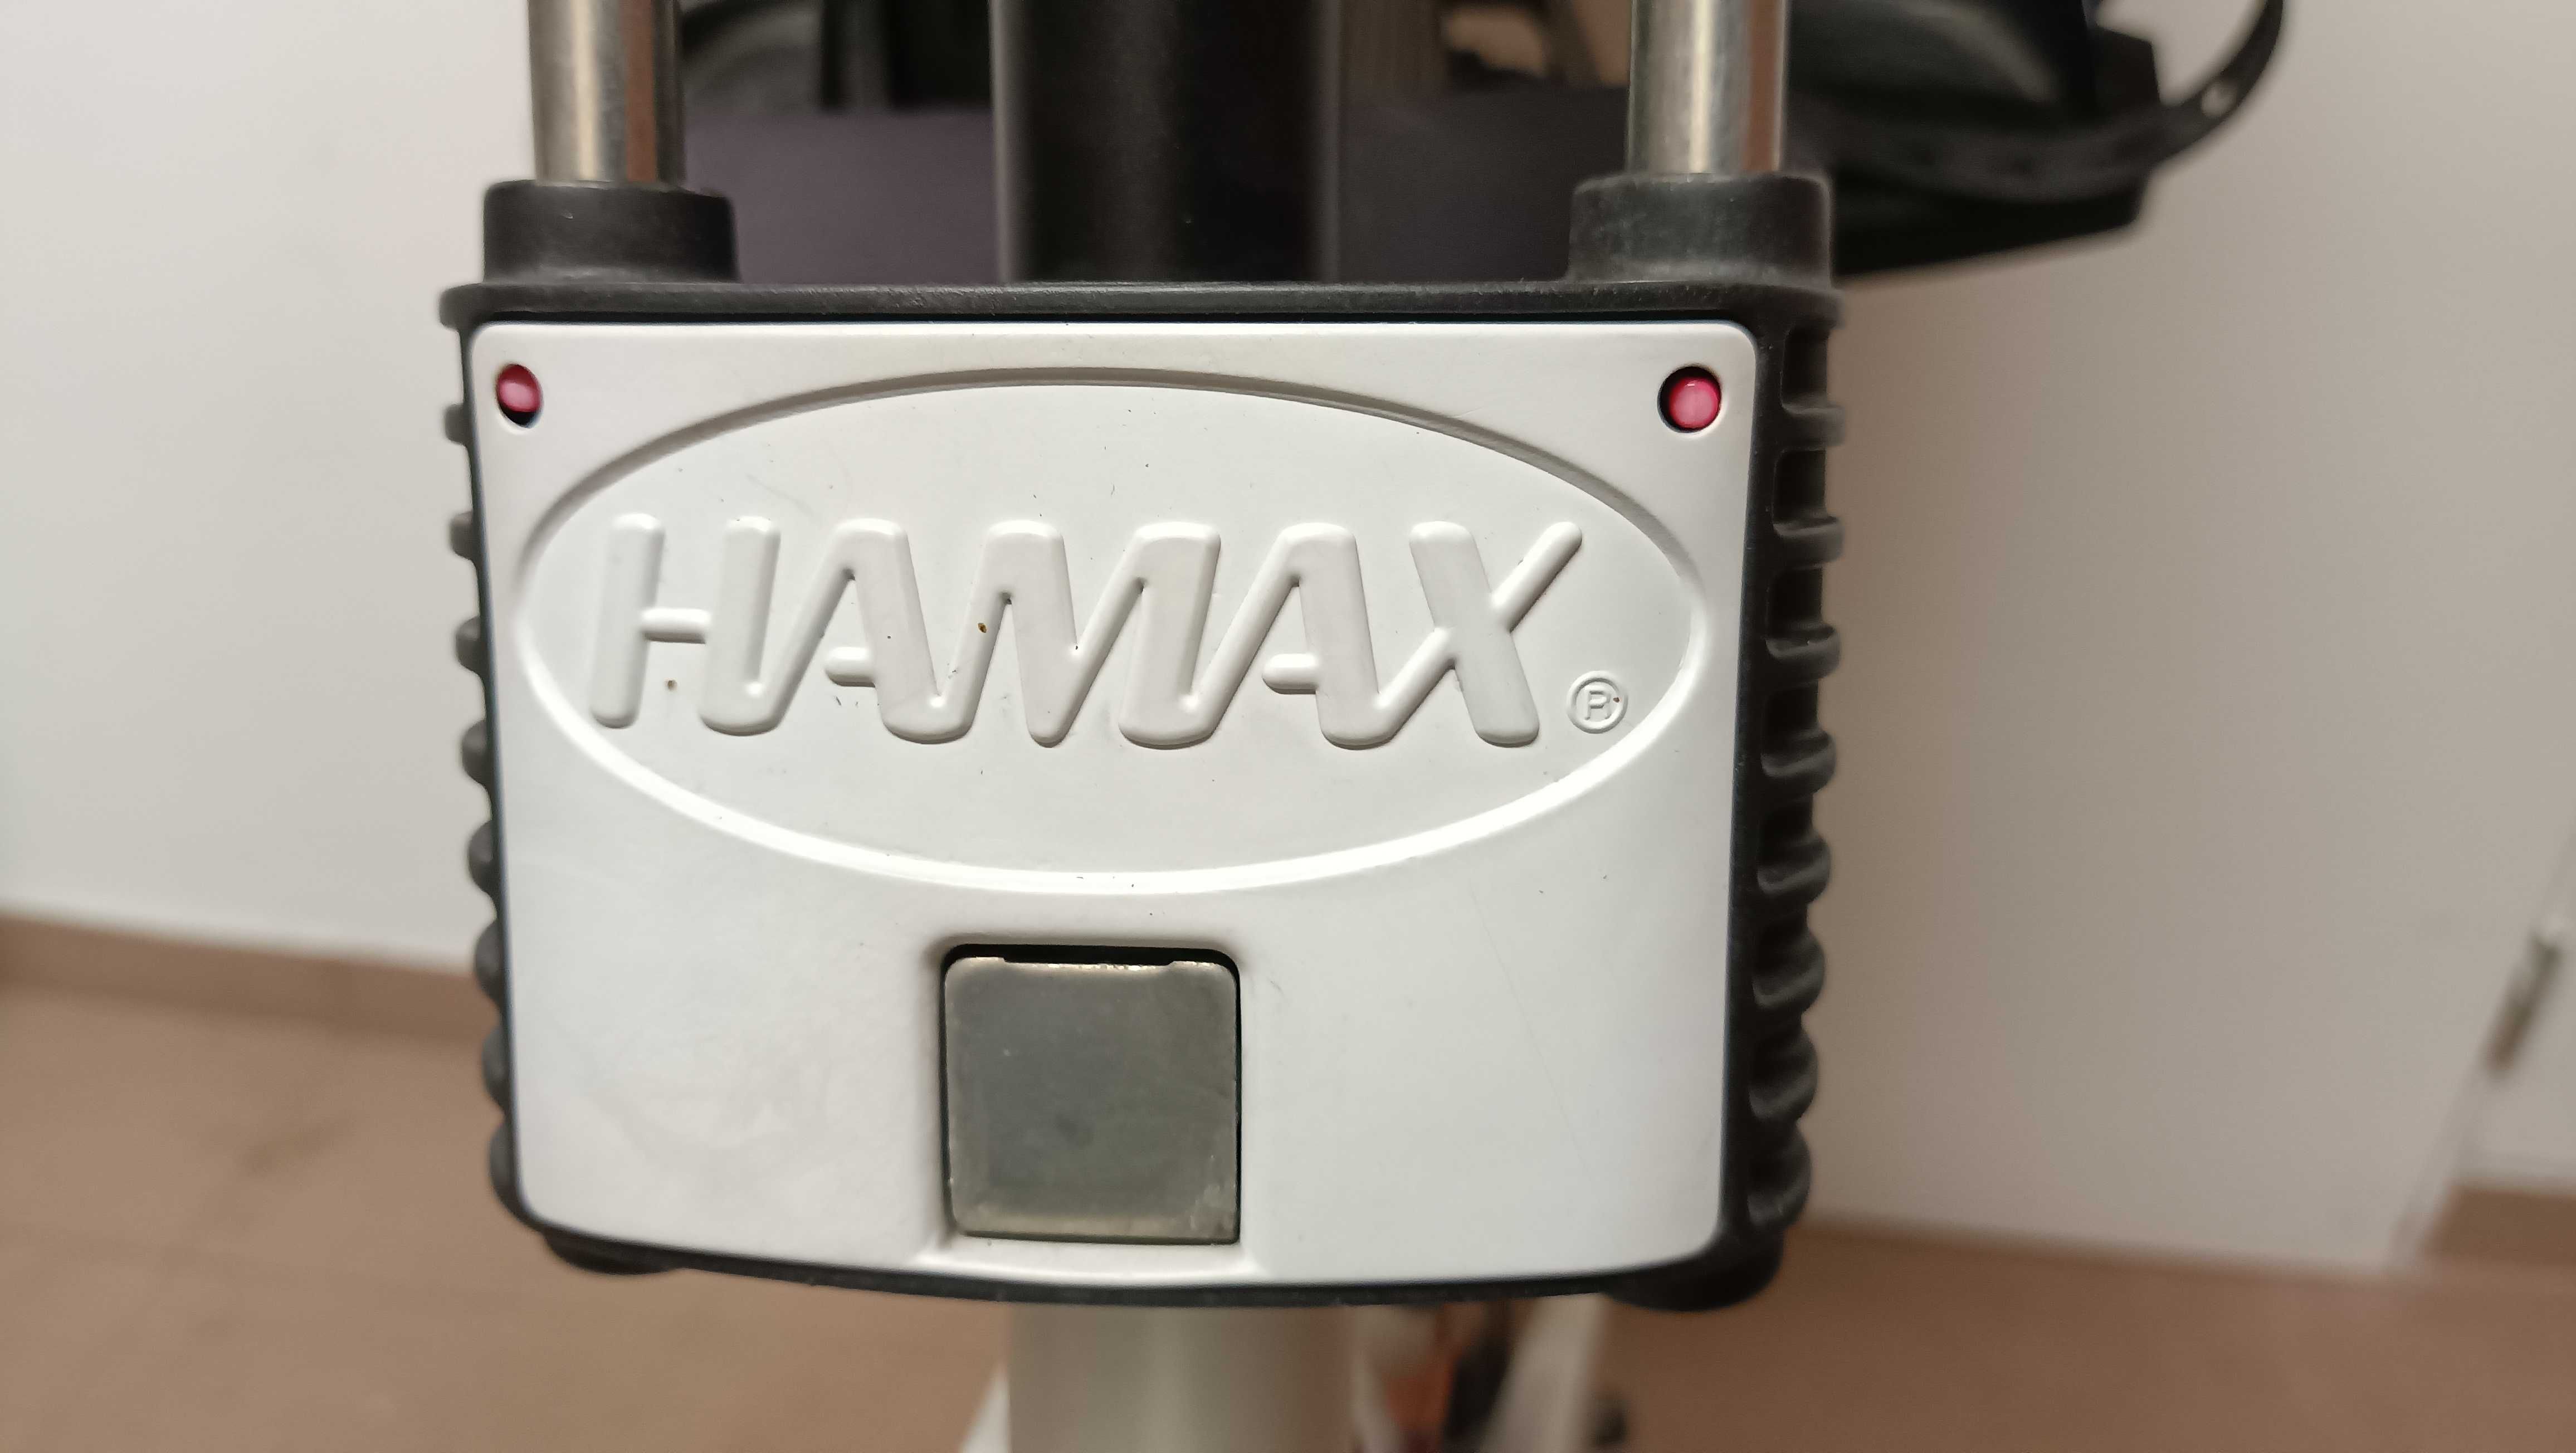 Fotelik rowerowy firmy Hamax.